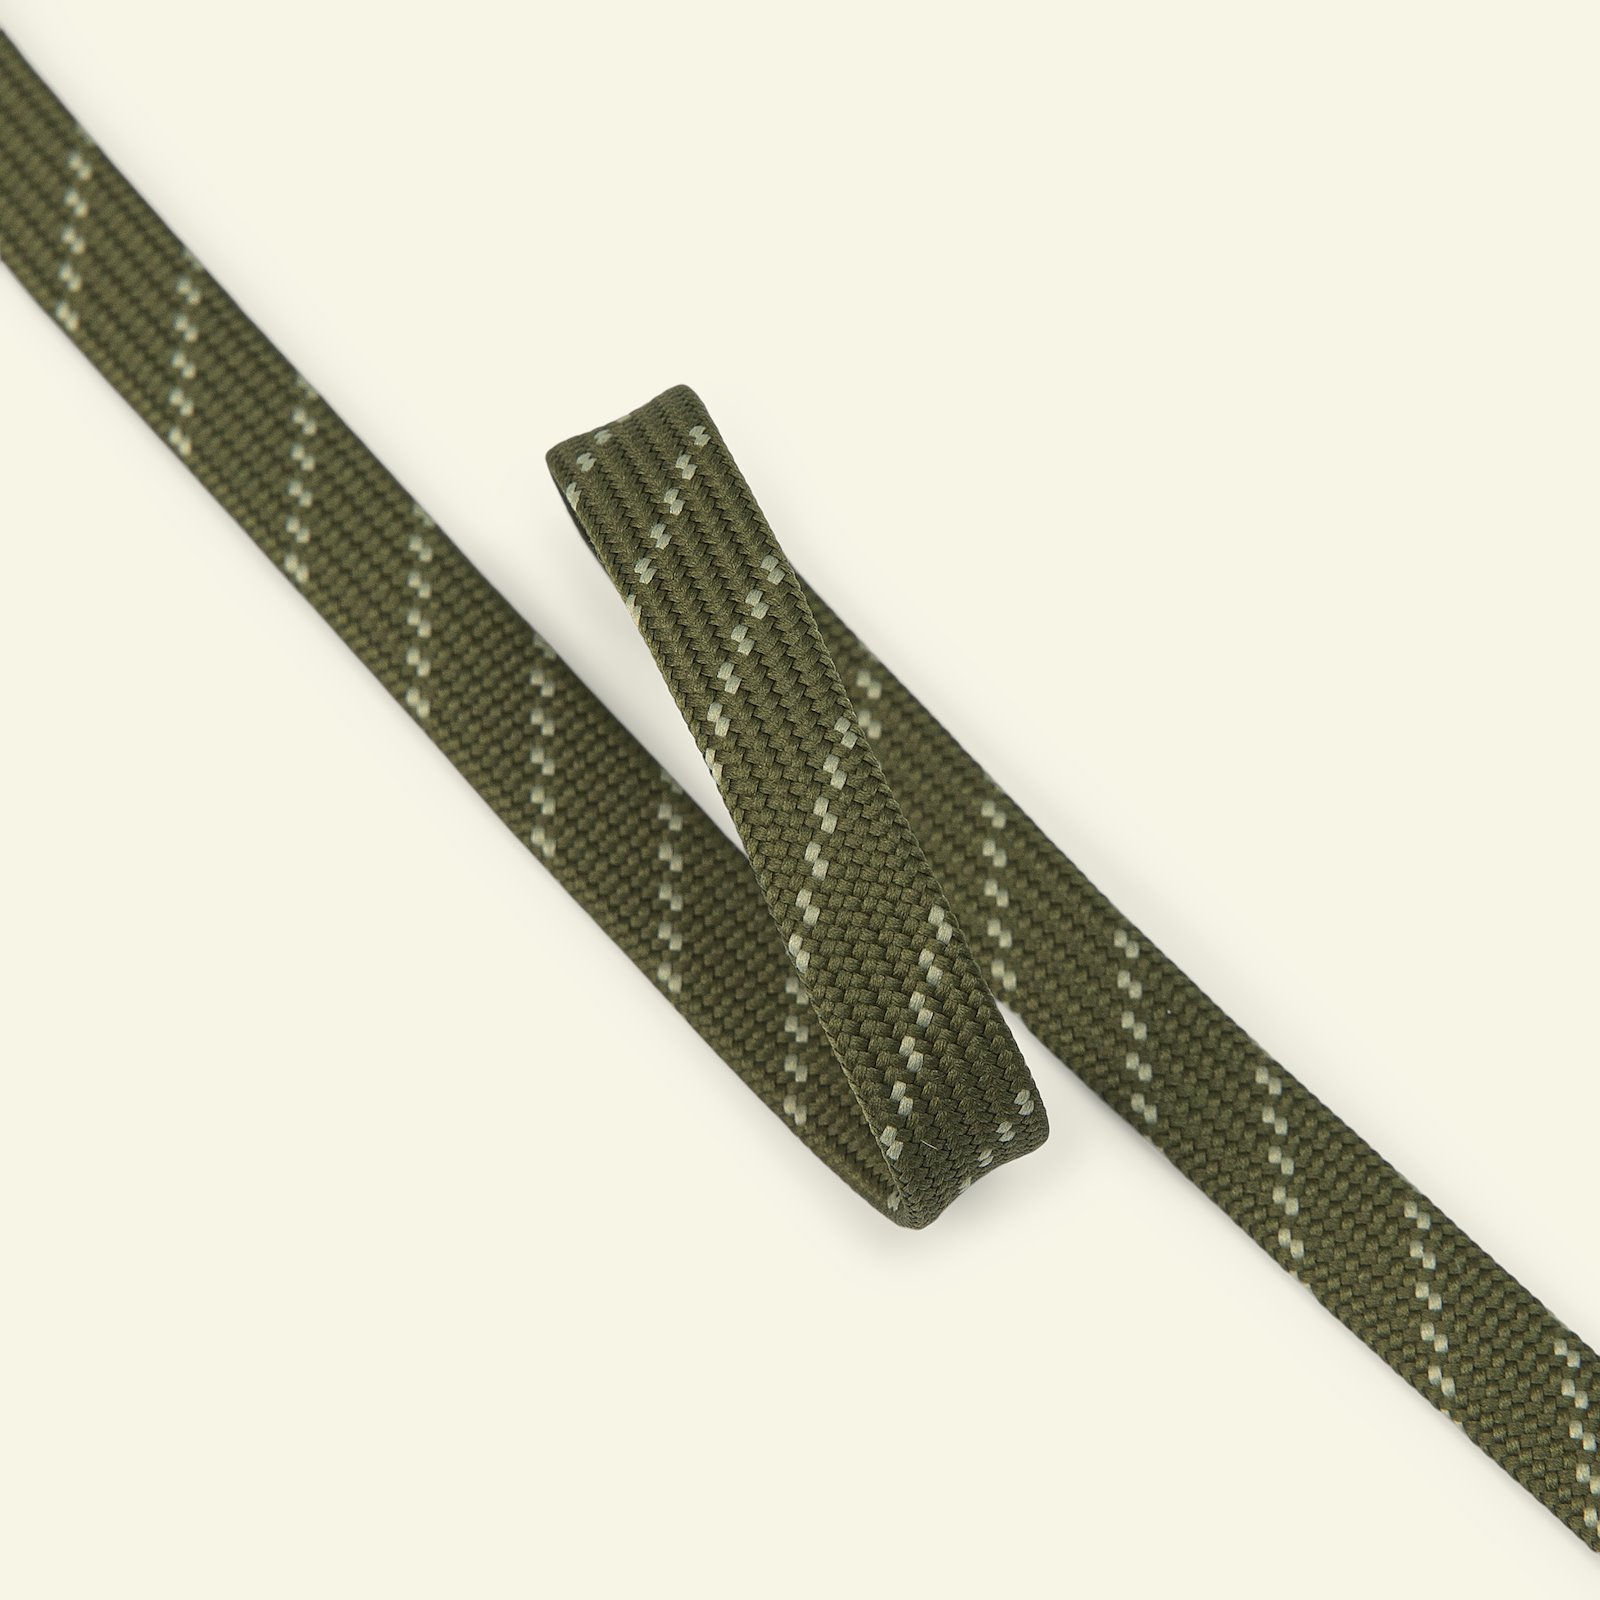 Slangebånd 10 mm grønt/naturligt, 2 m 22426_pack